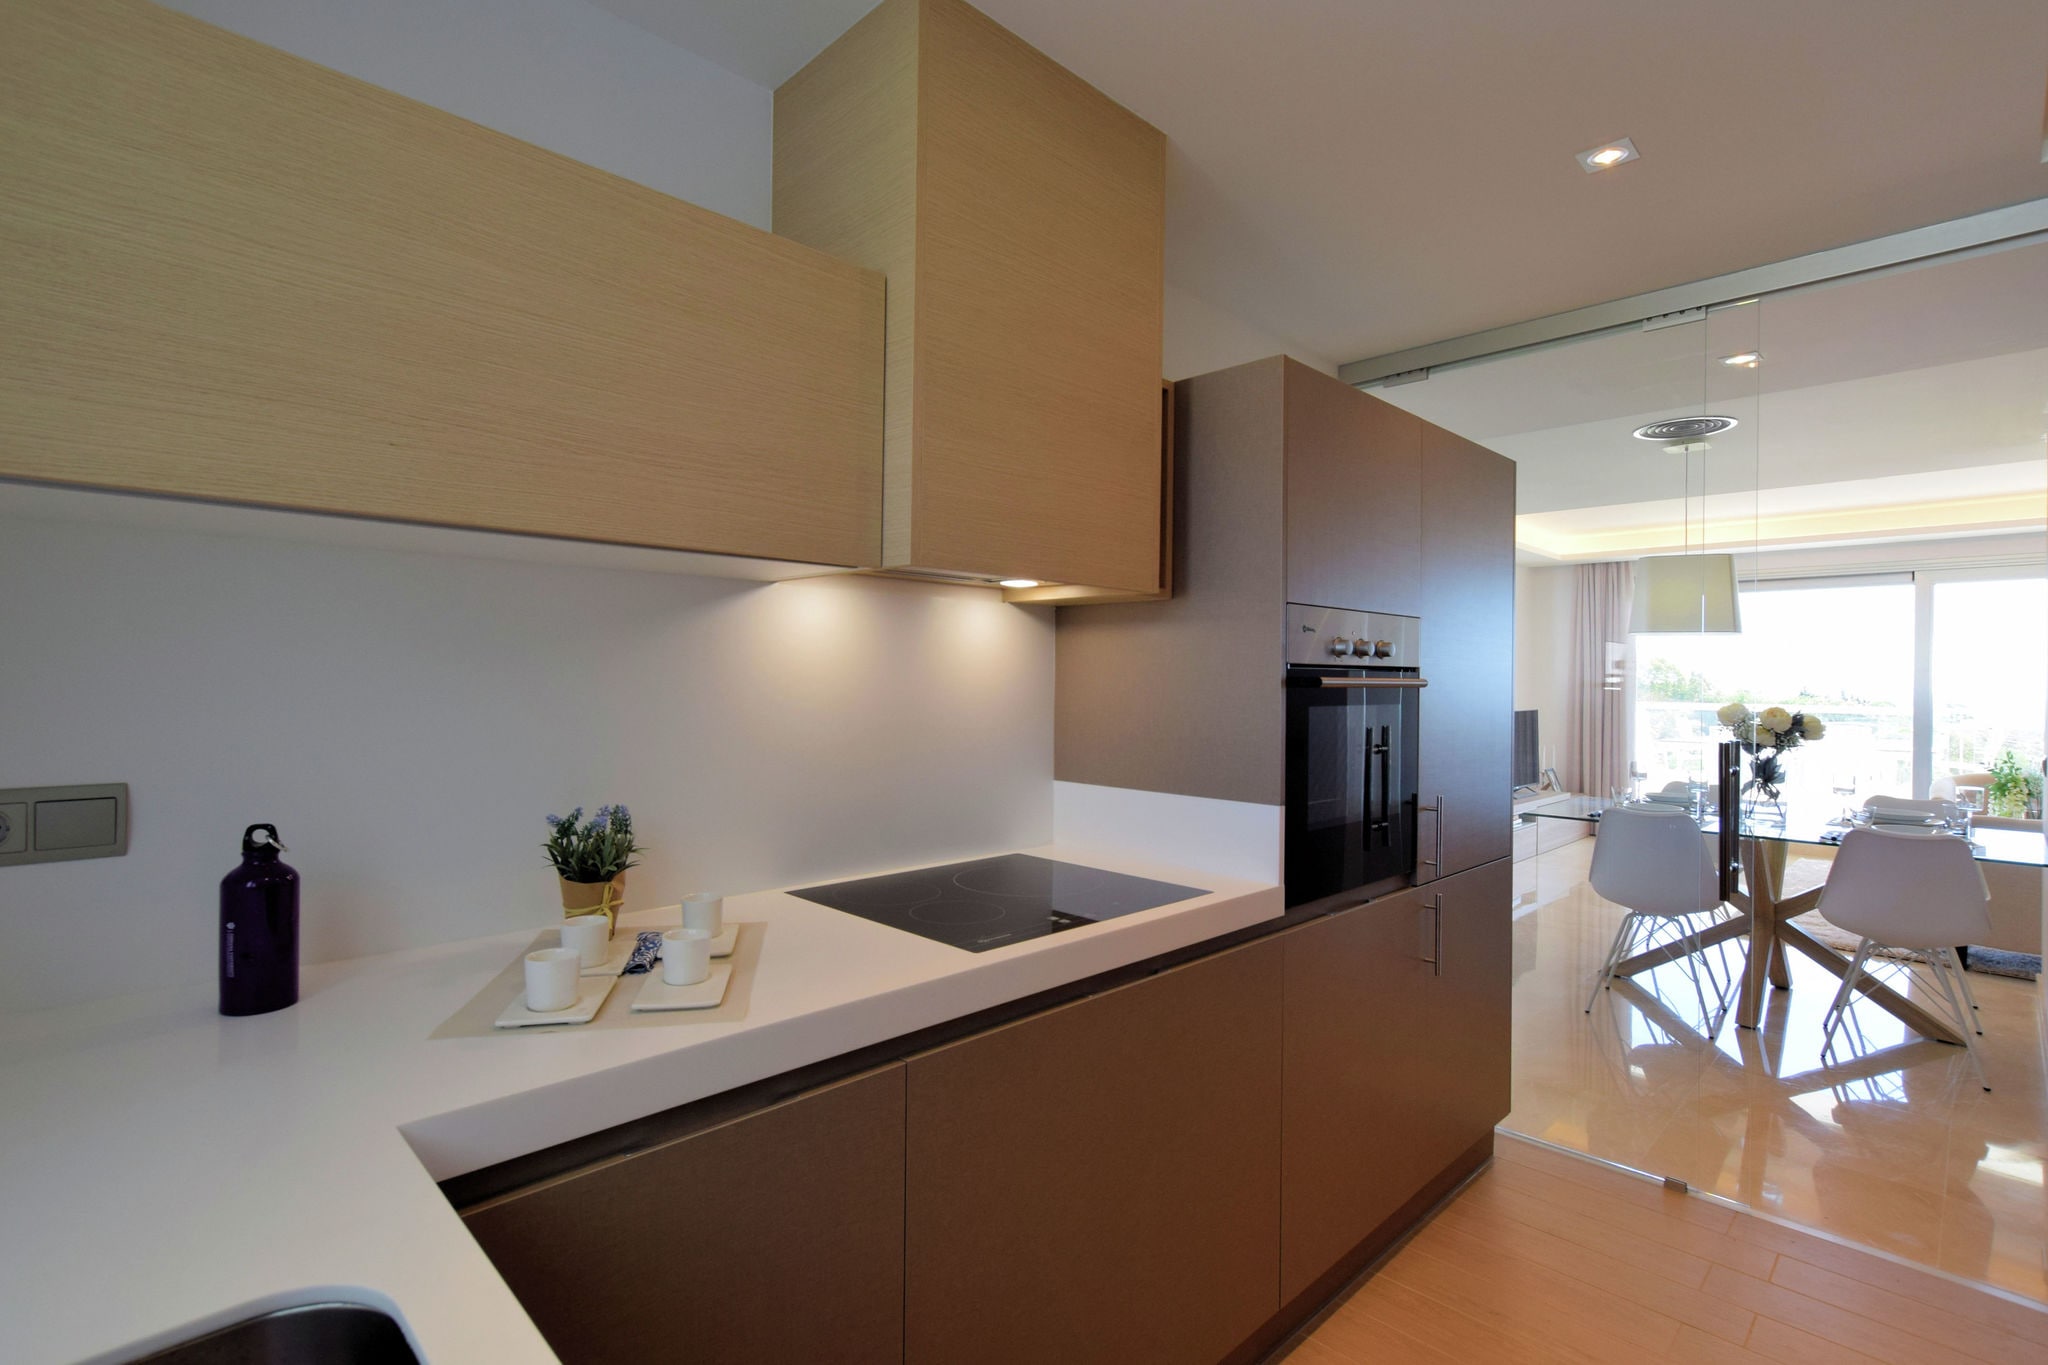 Nieuw luxe appartement in La Cala Golf Resort in de buurt van Mijas tussen Malaga en Marbella